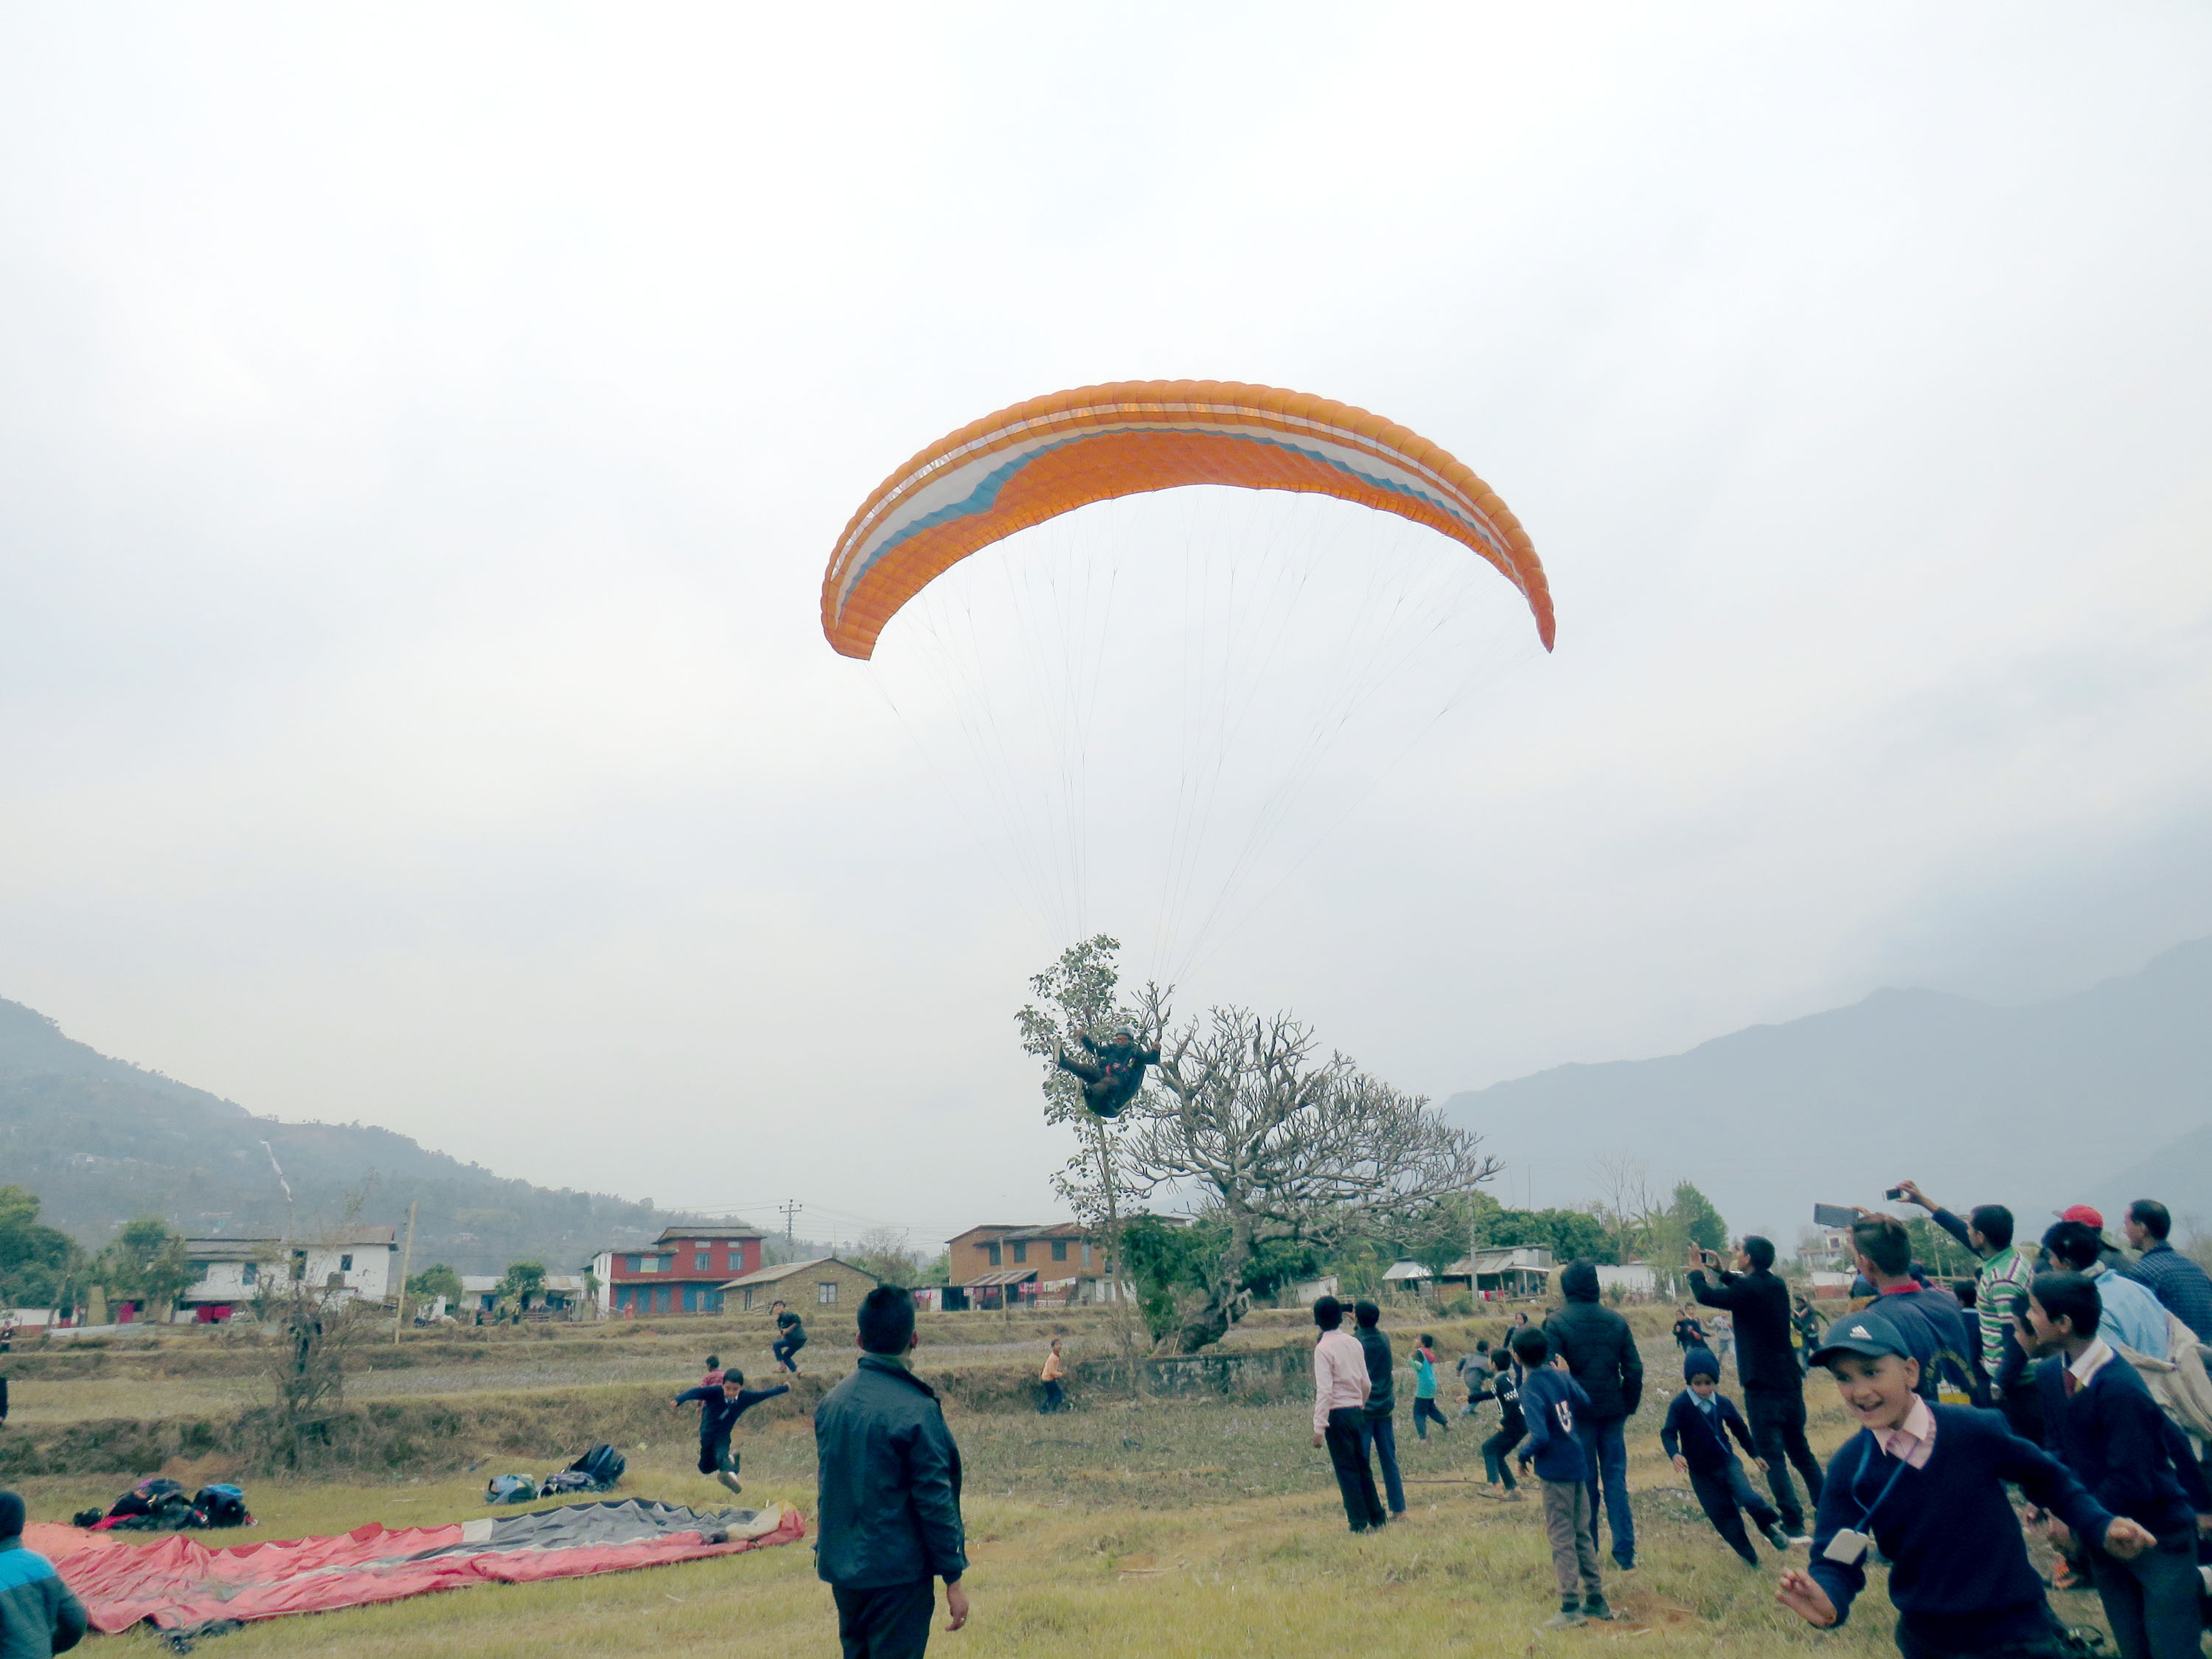 Commercial Paragliding begins in Kavre